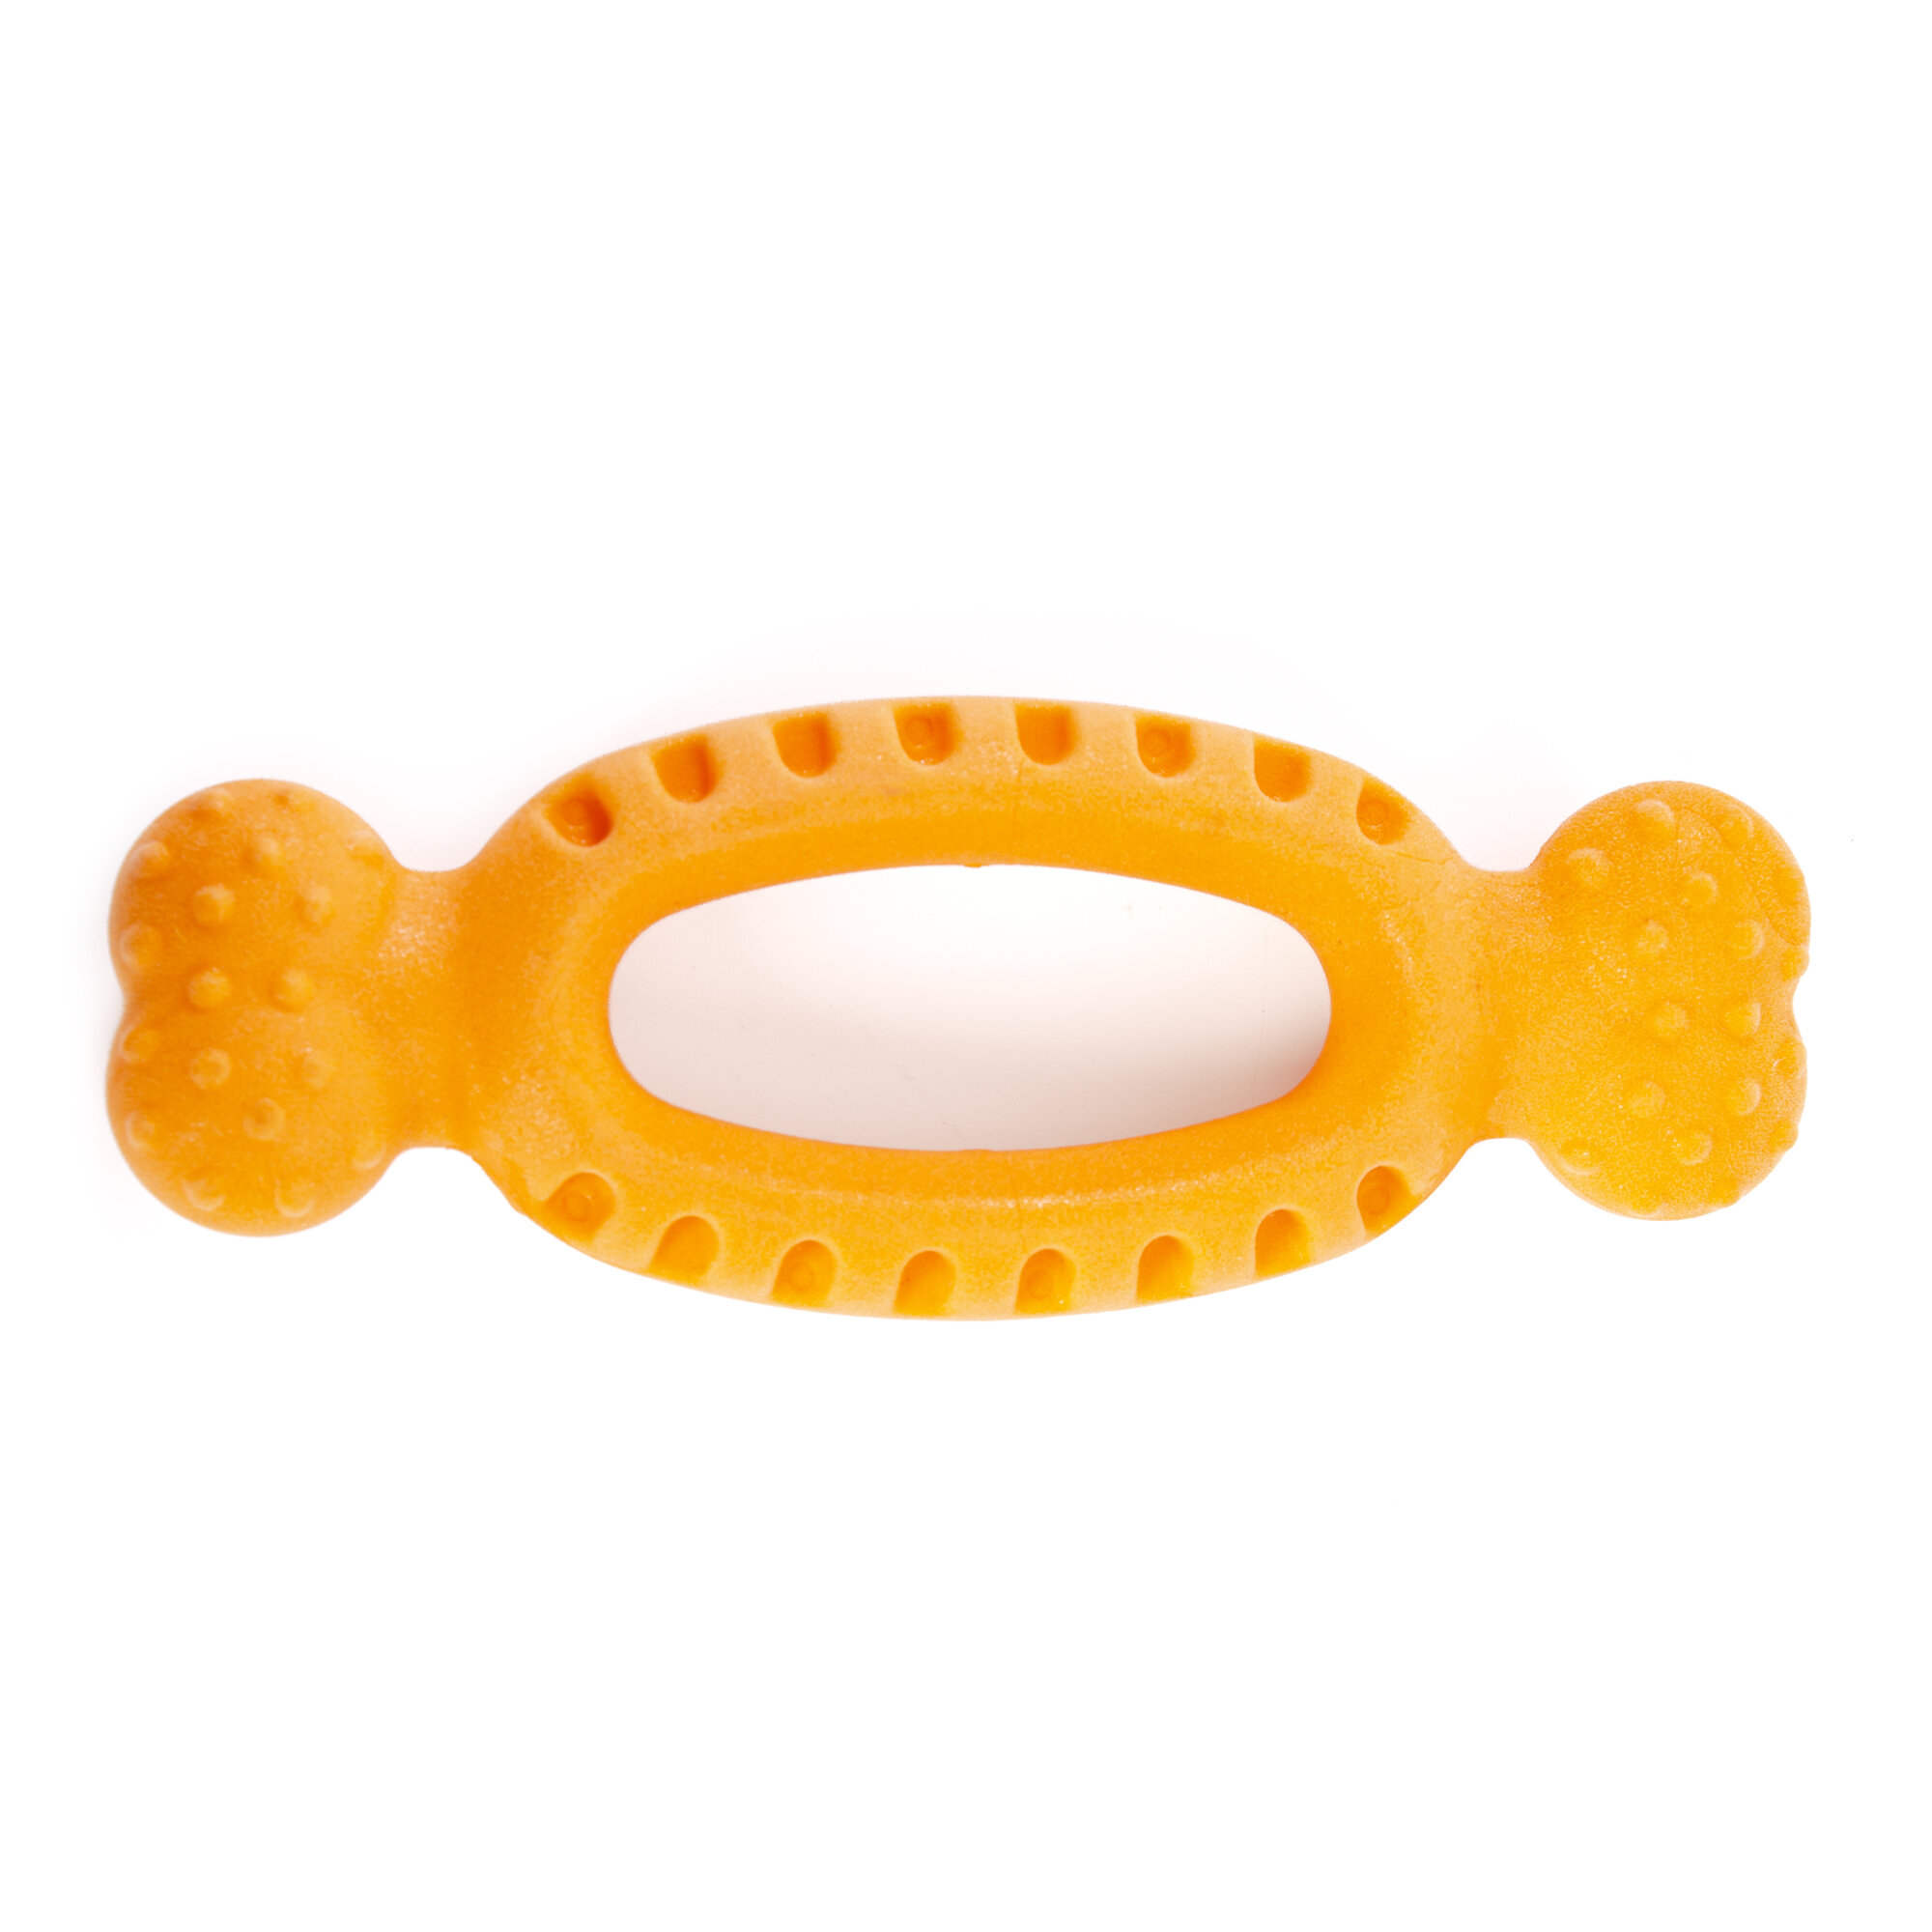 Игрушка для собак резиновая EliteDog "Овальное кольцо с ручками", оранжевая, 17.4х6.5х2.9см